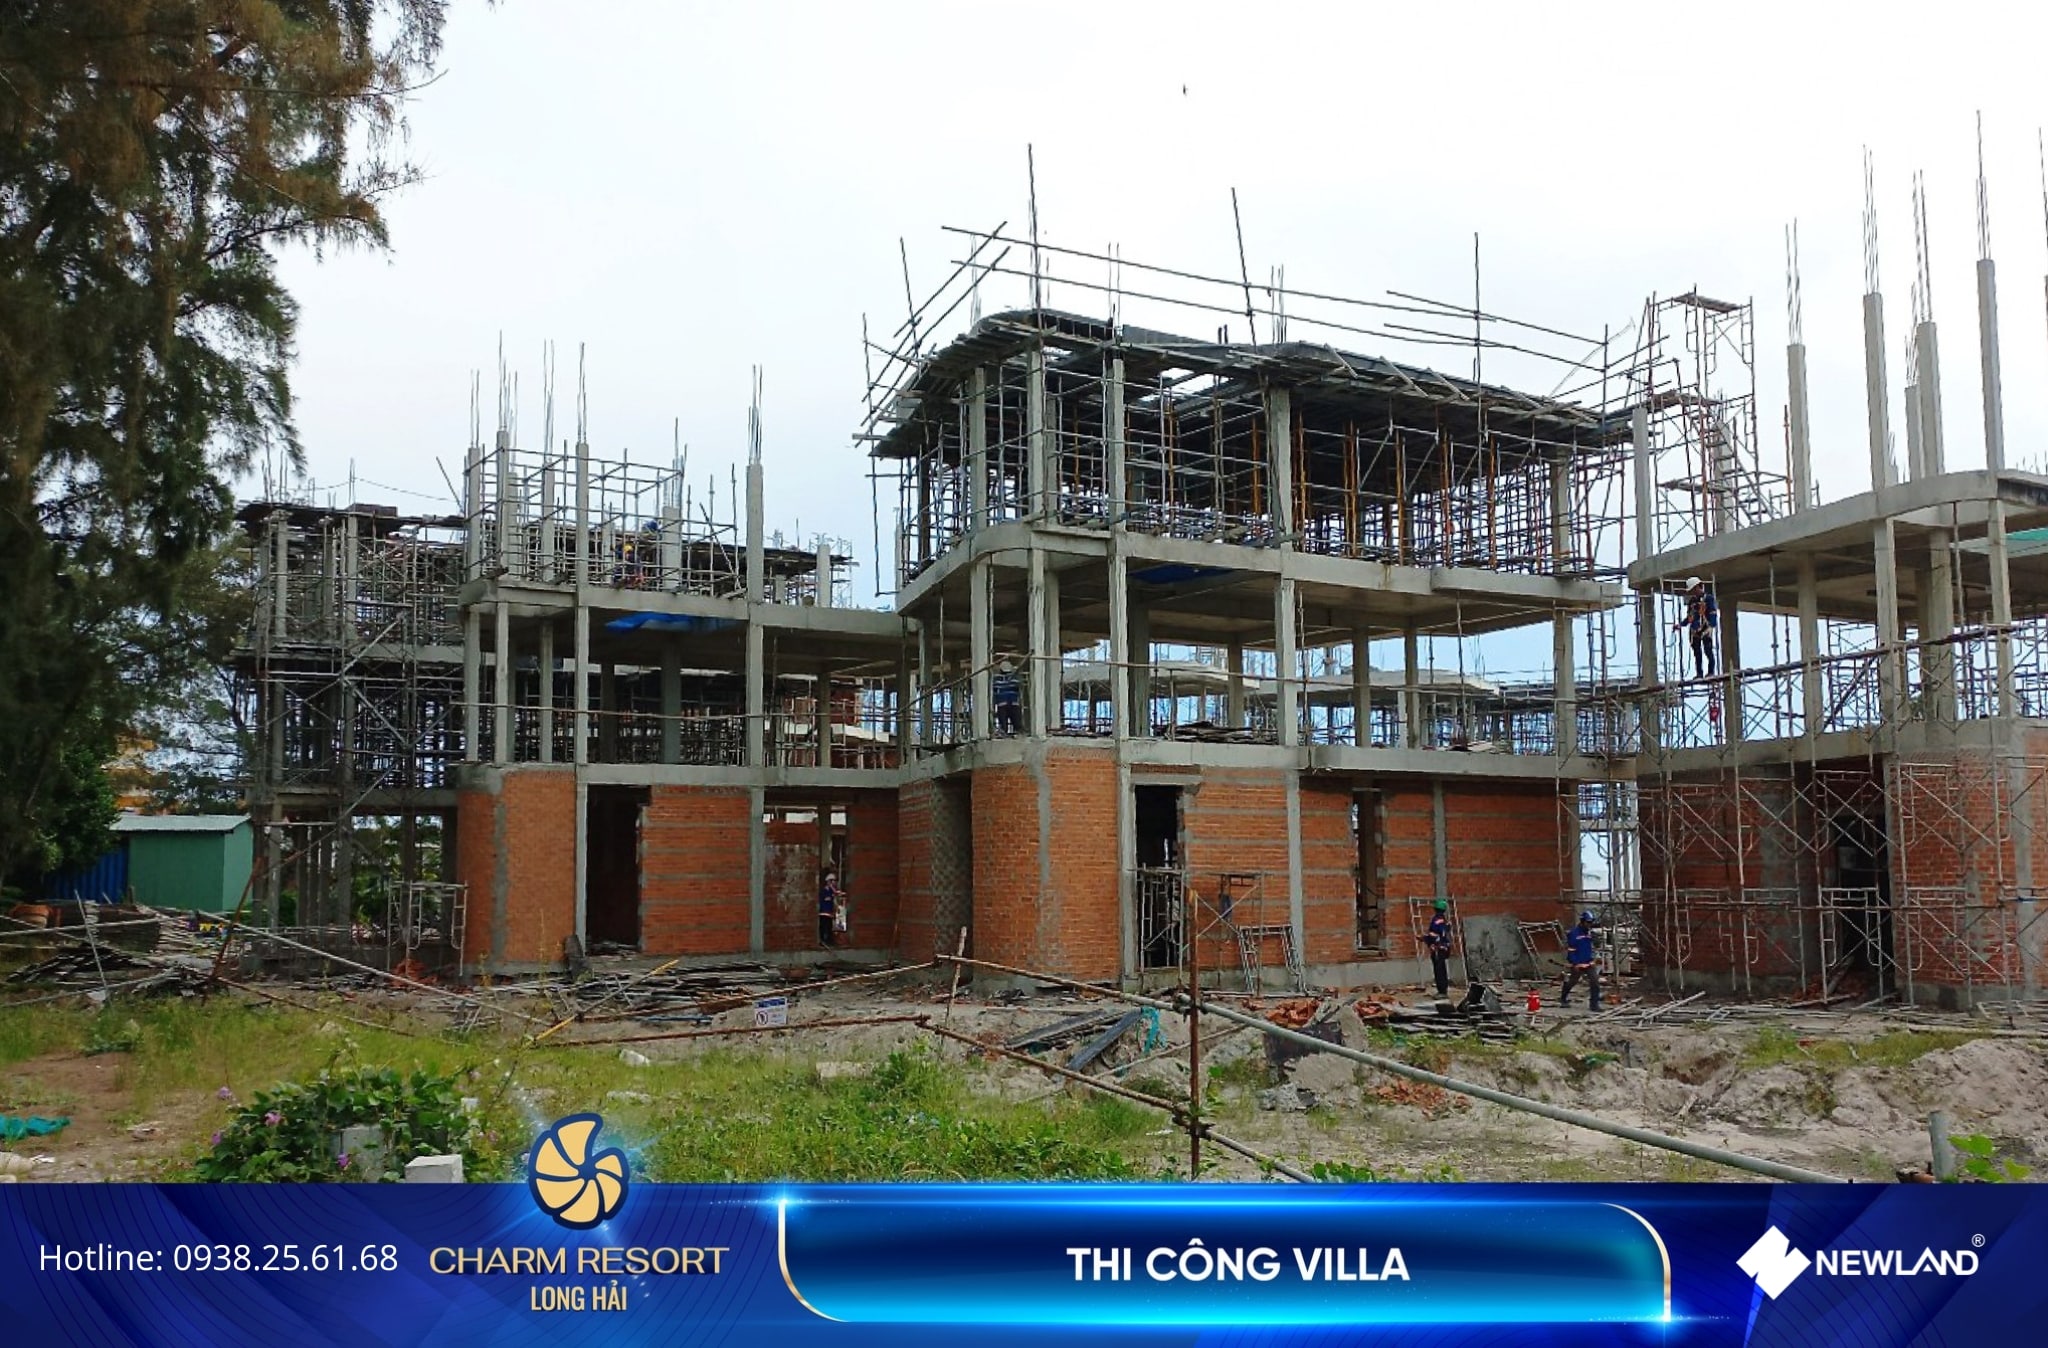 Khu villa đang được thi công cột tầng 3, sàn tầng 4, tường chắn đất và xây tường ở các căn. Đồng thời, đội ngũ đang tiến hành lắp dựng ván khuôn cầu thang bộ.